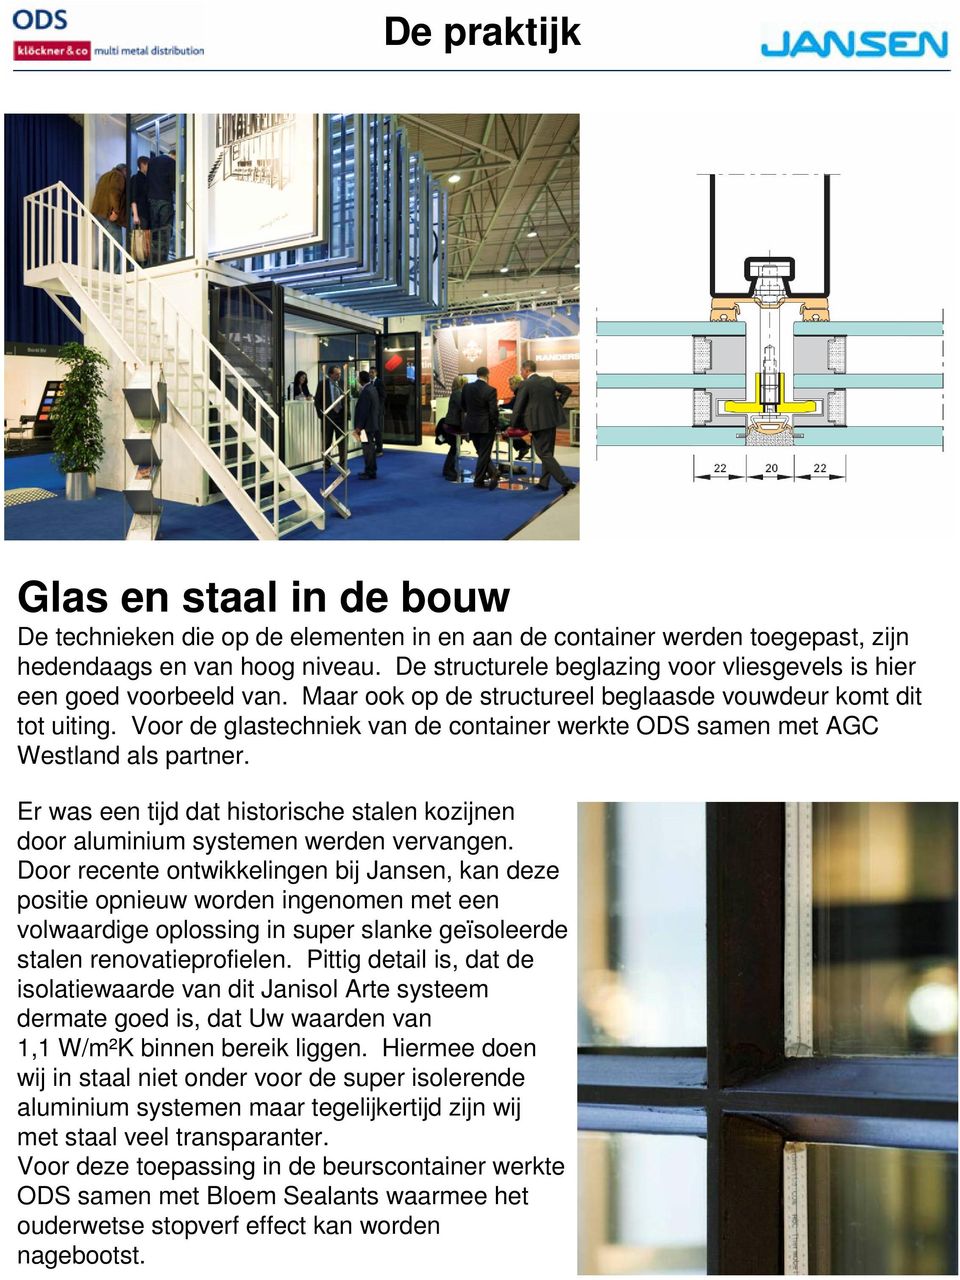 Voor de glastechniek van de container werkte ODS samen met AGC Westland als partner. Er was een tijd dat historische stalen kozijnen door aluminium systemen werden vervangen.